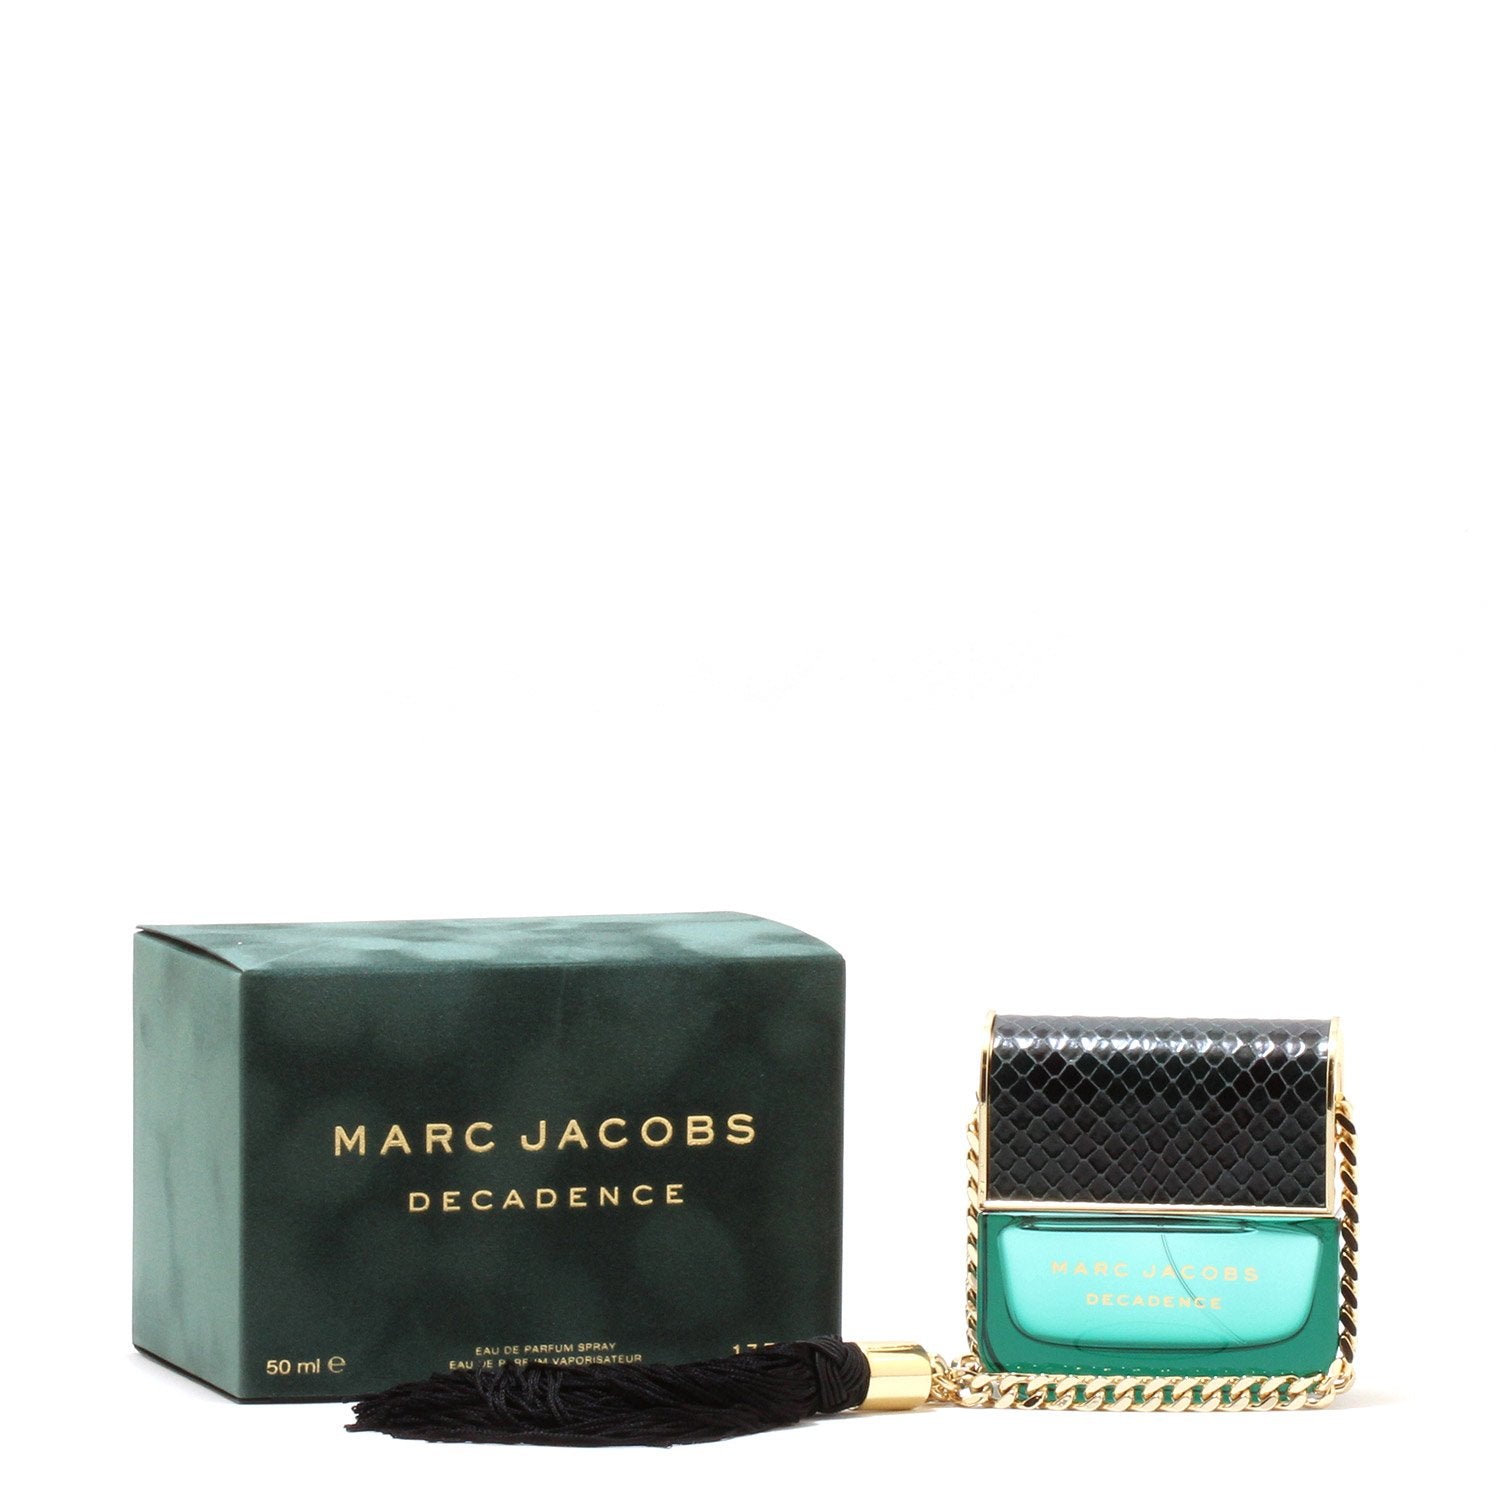 MARC JACOBS DECADENCE FOR WOMEN EAU DE PARFUM – Fragrance